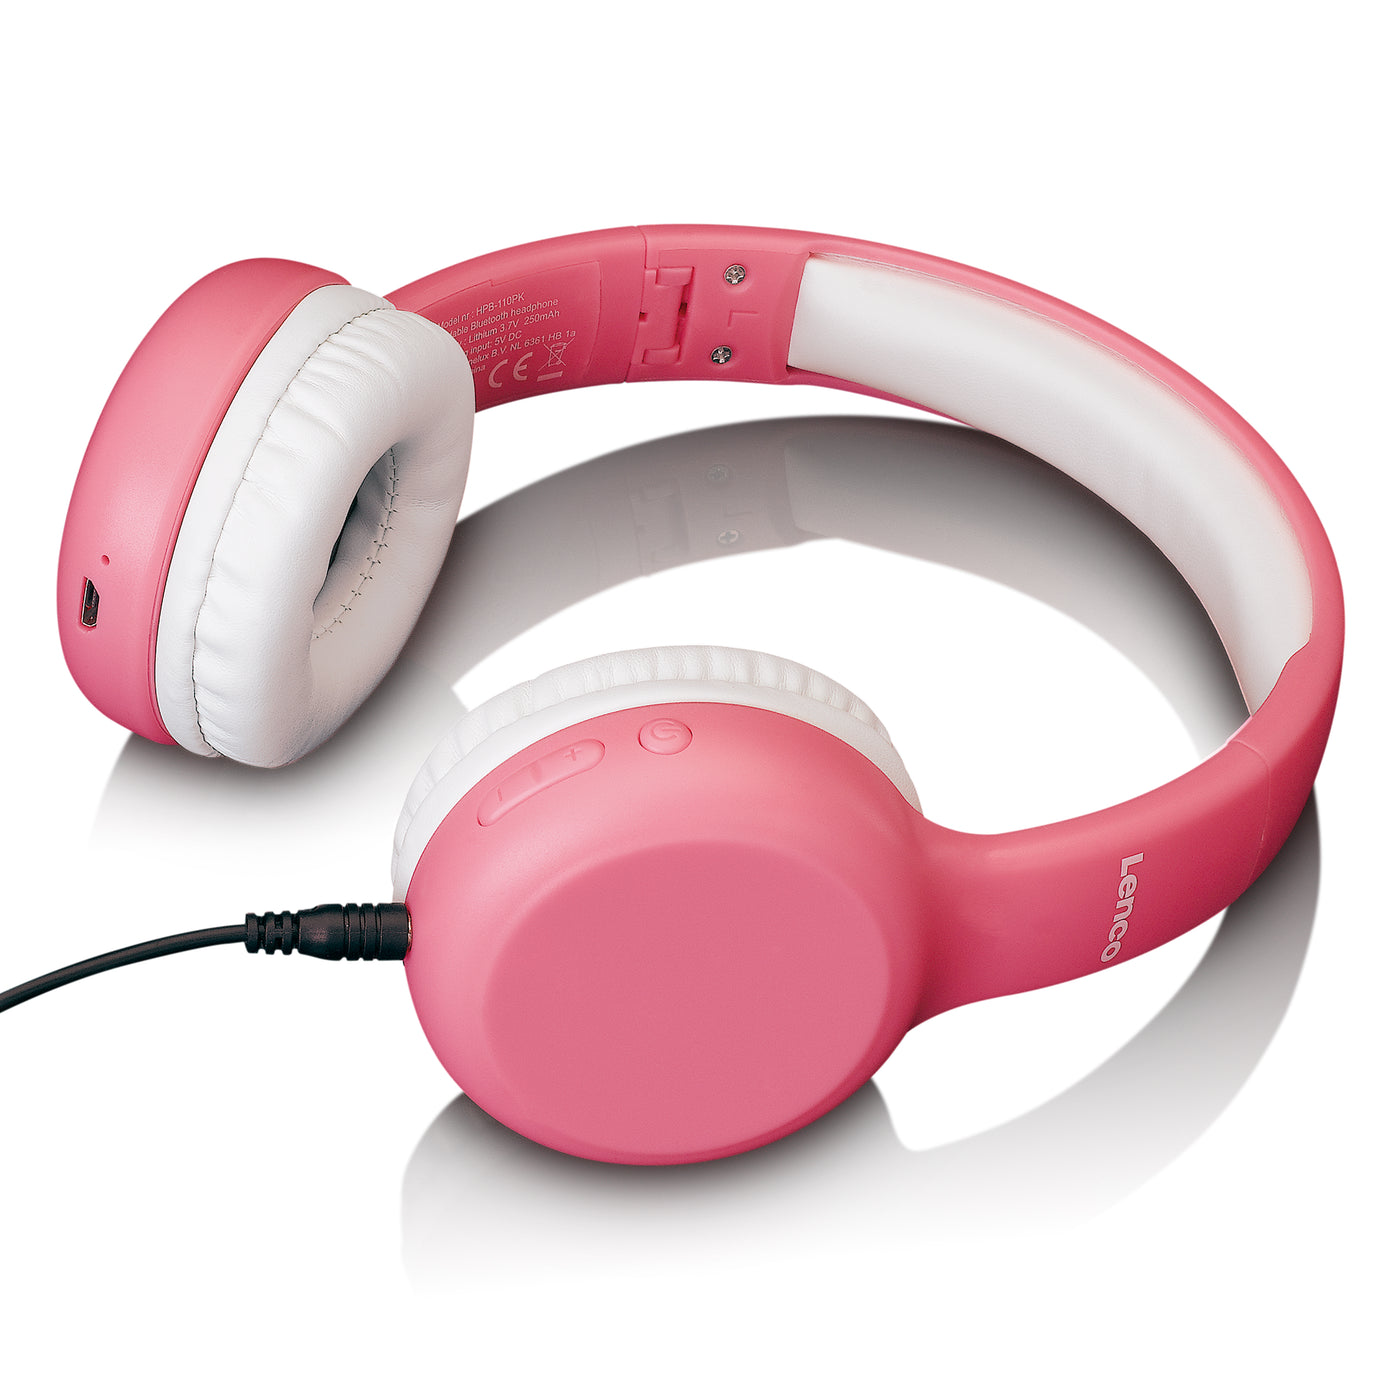 LENCO HPB-110PK - Składane dziecięce słuchawki Bluetooth® - Różowy